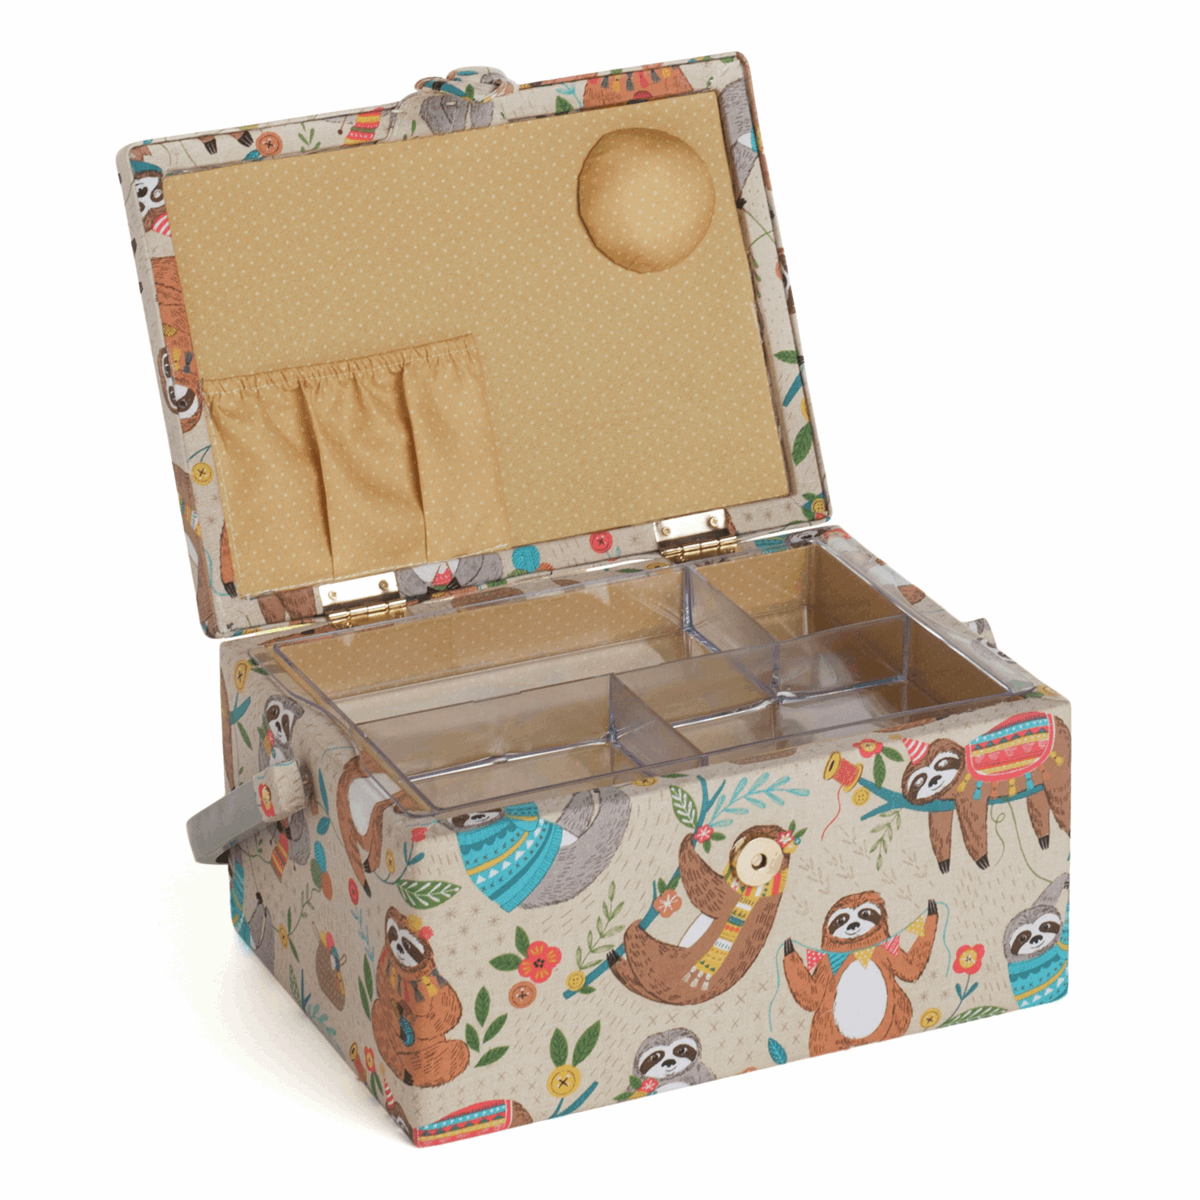 Sloth Sewing Box - Medium